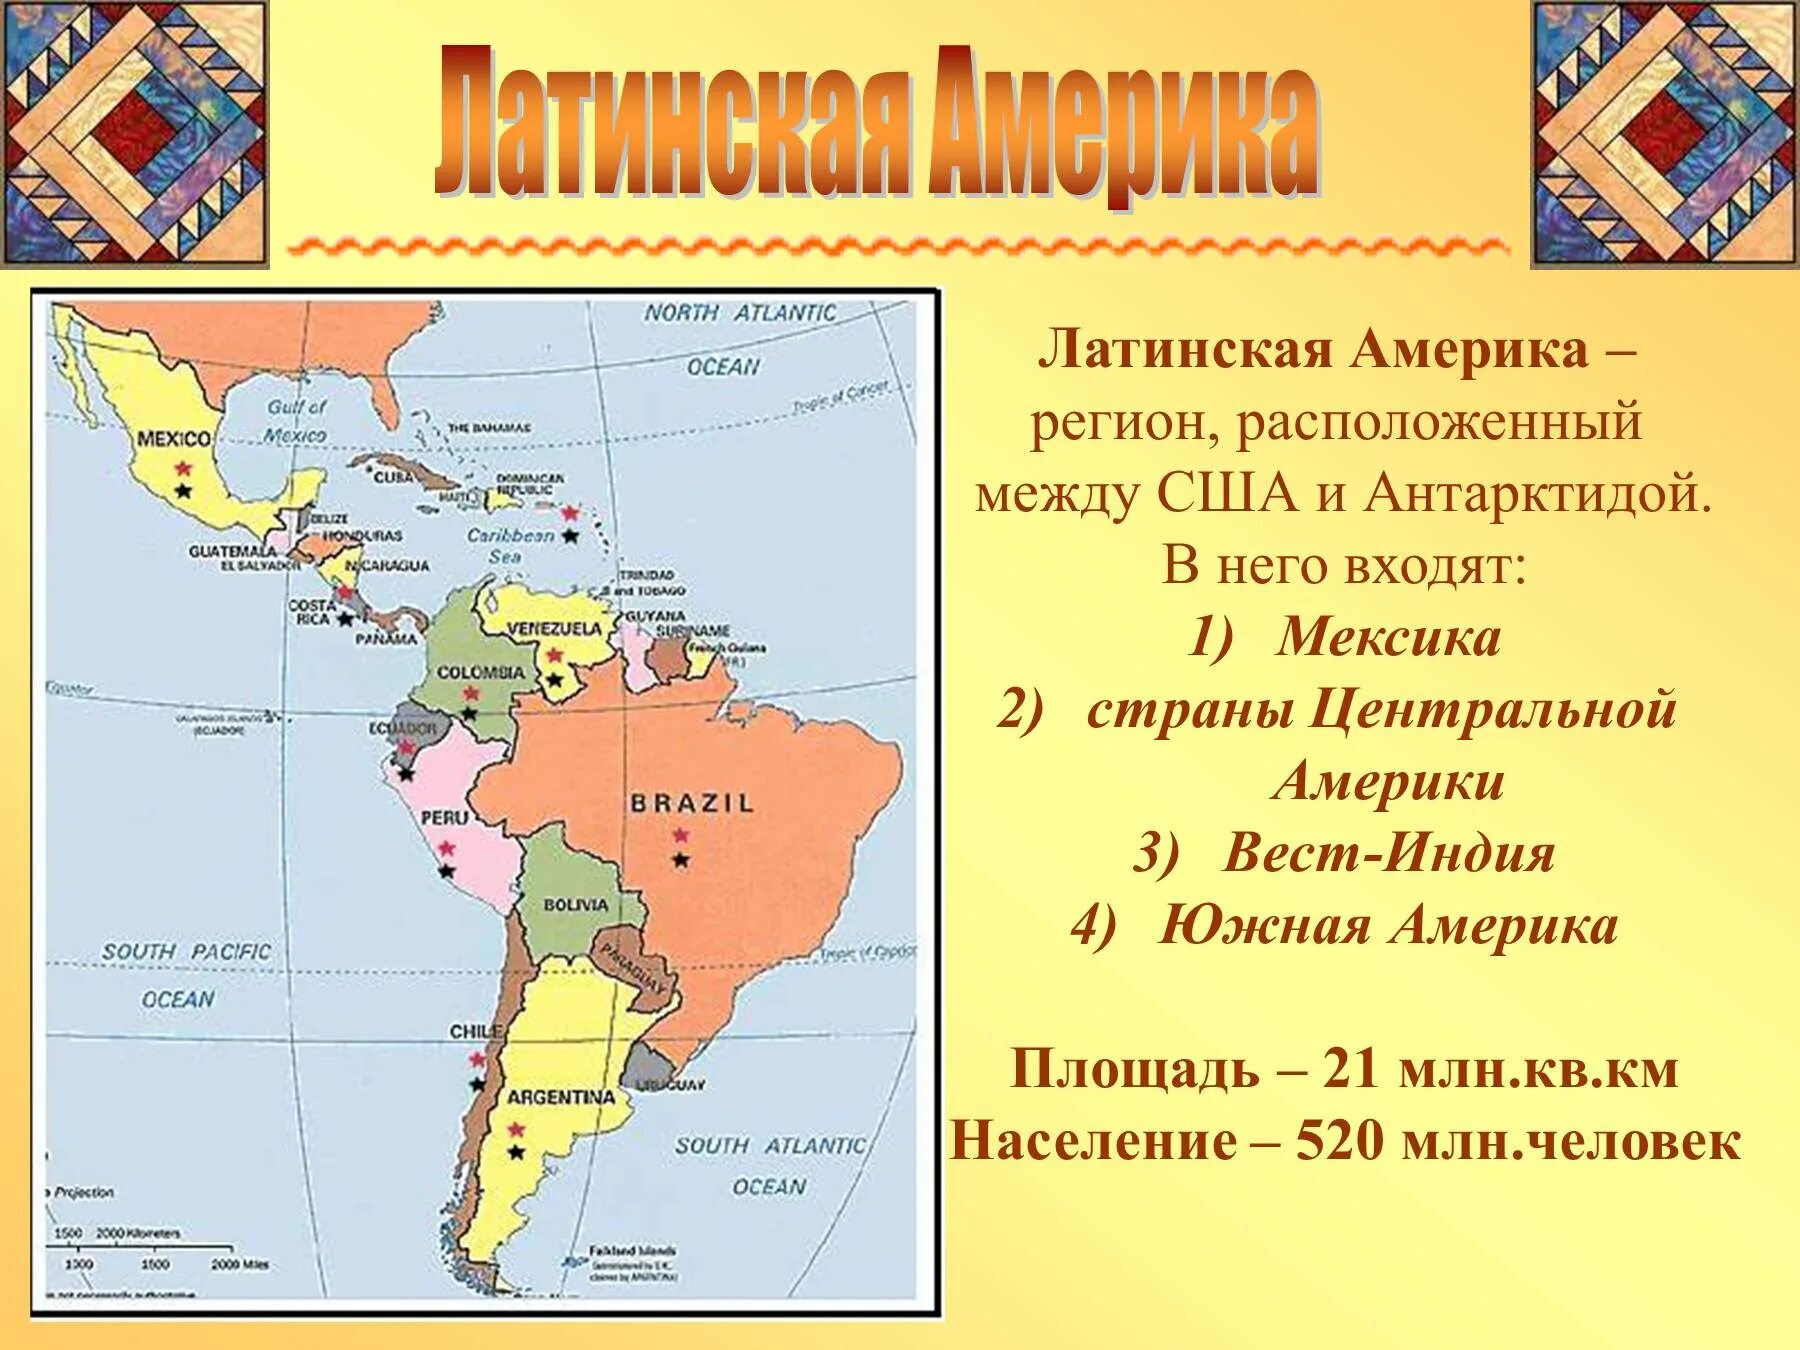 Америка какие страны входят в состав. Политическая карта Латинской Америки субрегионы. Состав Латинской Америки карта. Государства на территории Латинской Америки. Границы всех государств Латинской Америки и их столицы на карте.